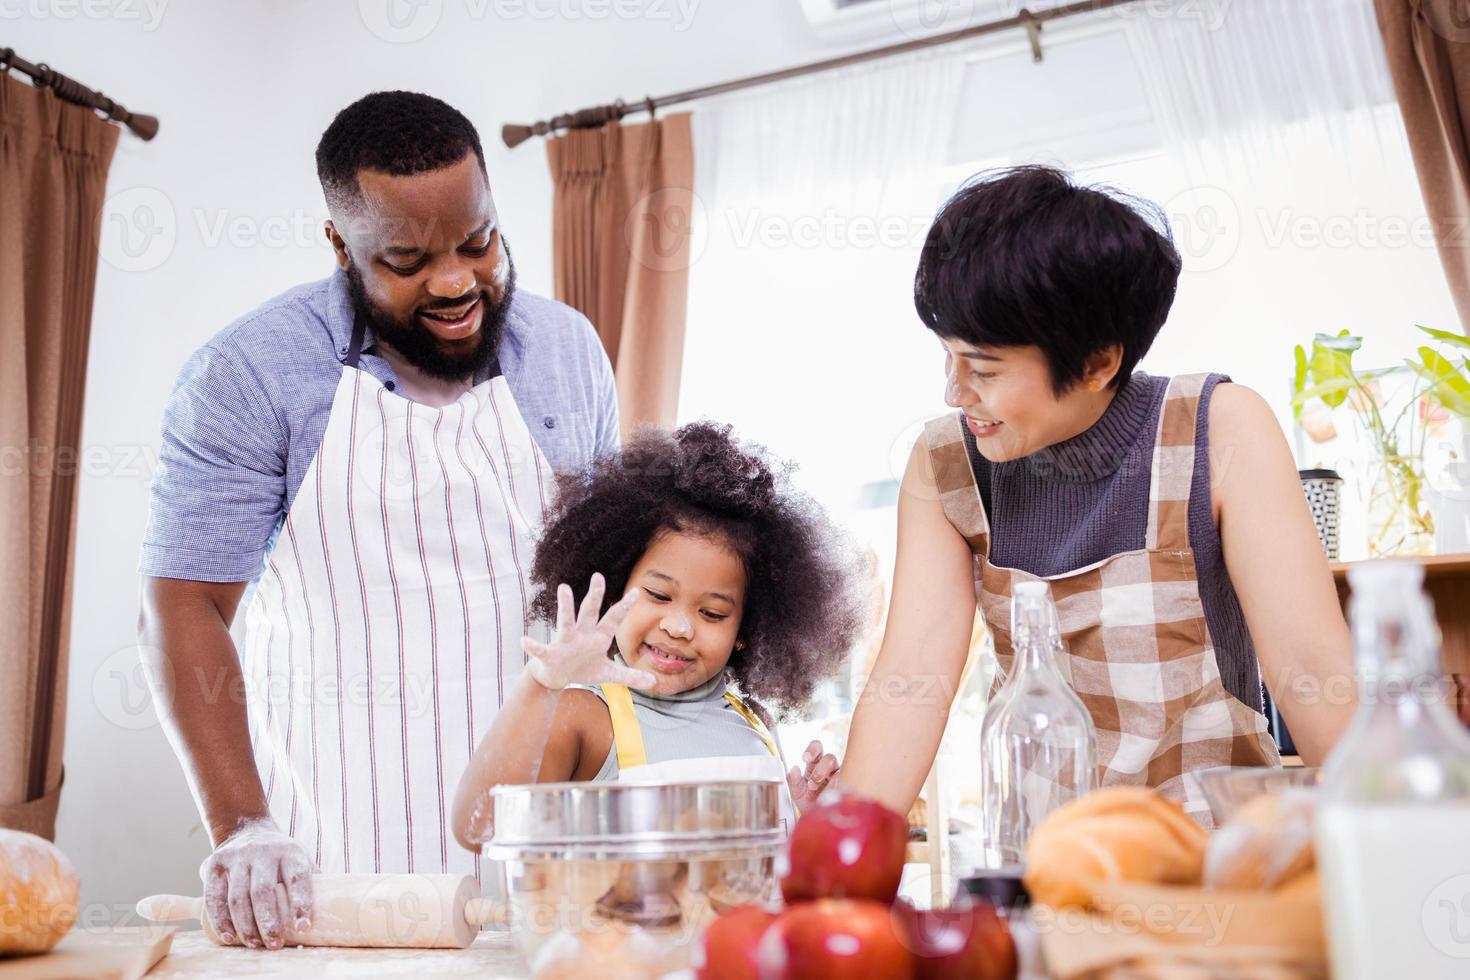 feliz africano americano família apreciar juntos enquanto preparar a farinha para fazer biscoitos às casa foto